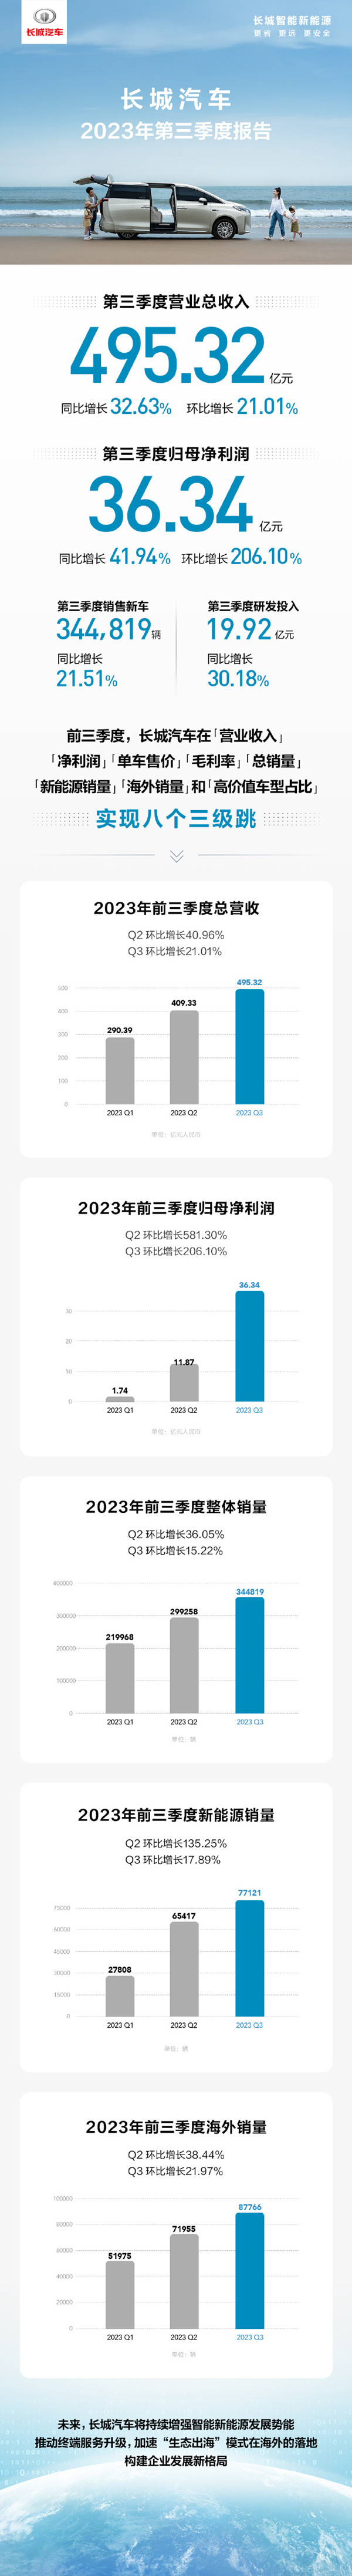 长城汽车公布Q3财报 营收约495.32亿元 净利润超36亿